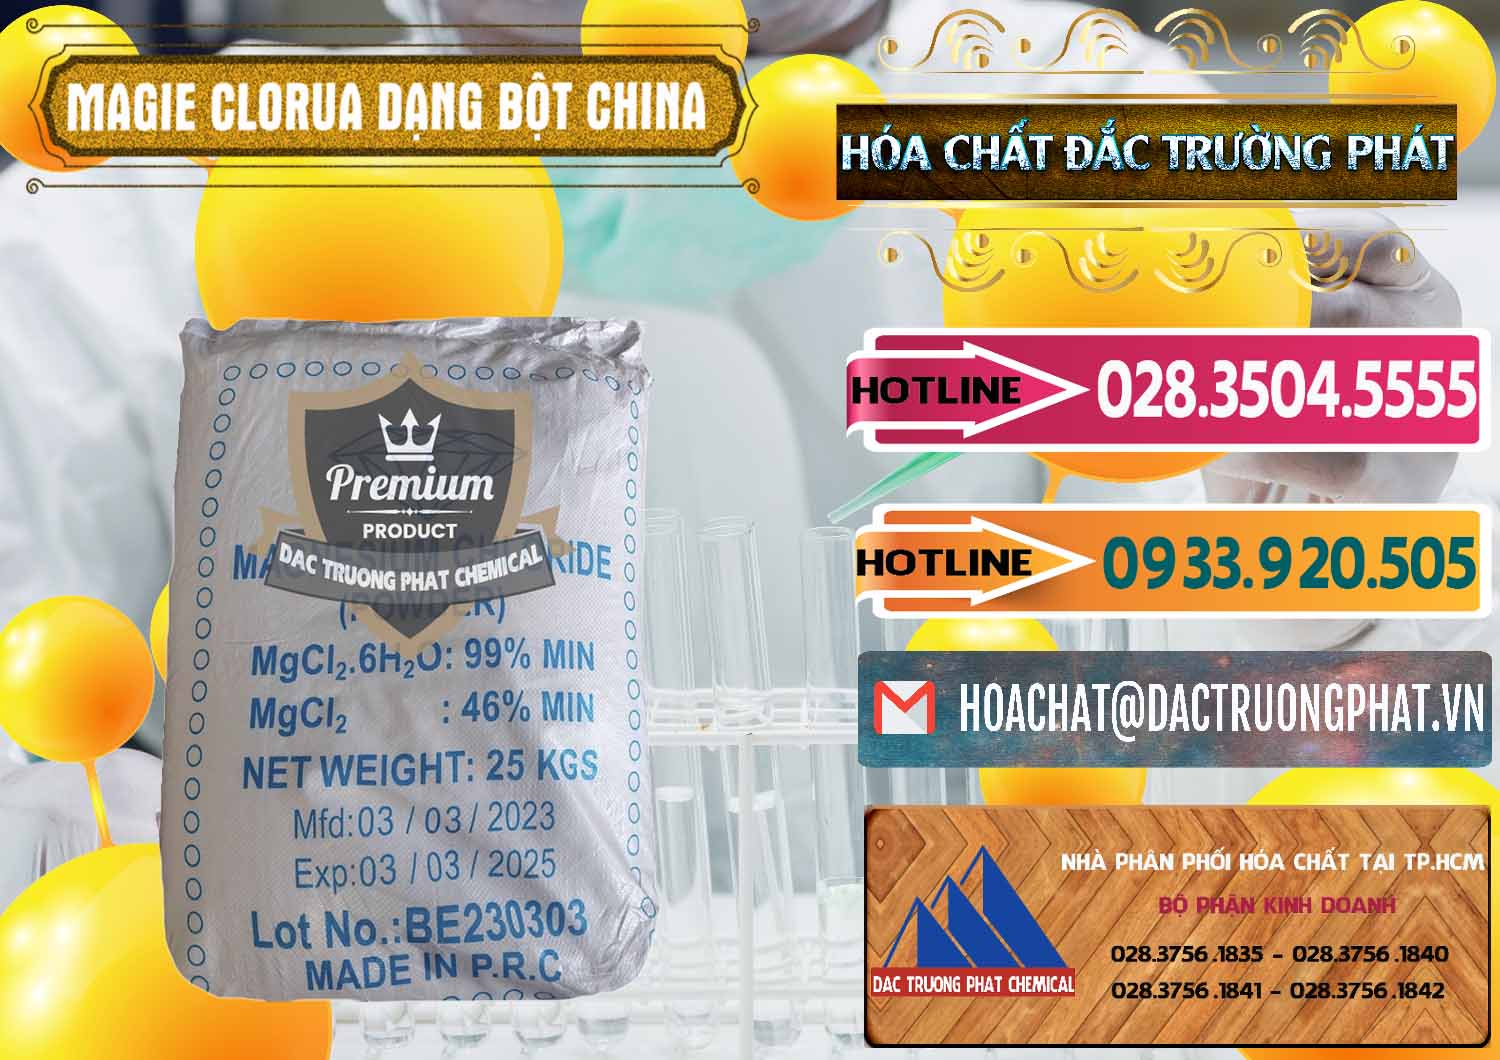 Chuyên bán - cung cấp Magie Clorua – MGCL2 96% Dạng Bột Logo Kim Cương Trung Quốc China - 0387 - Công ty chuyên cung cấp & kinh doanh hóa chất tại TP.HCM - dactruongphat.vn